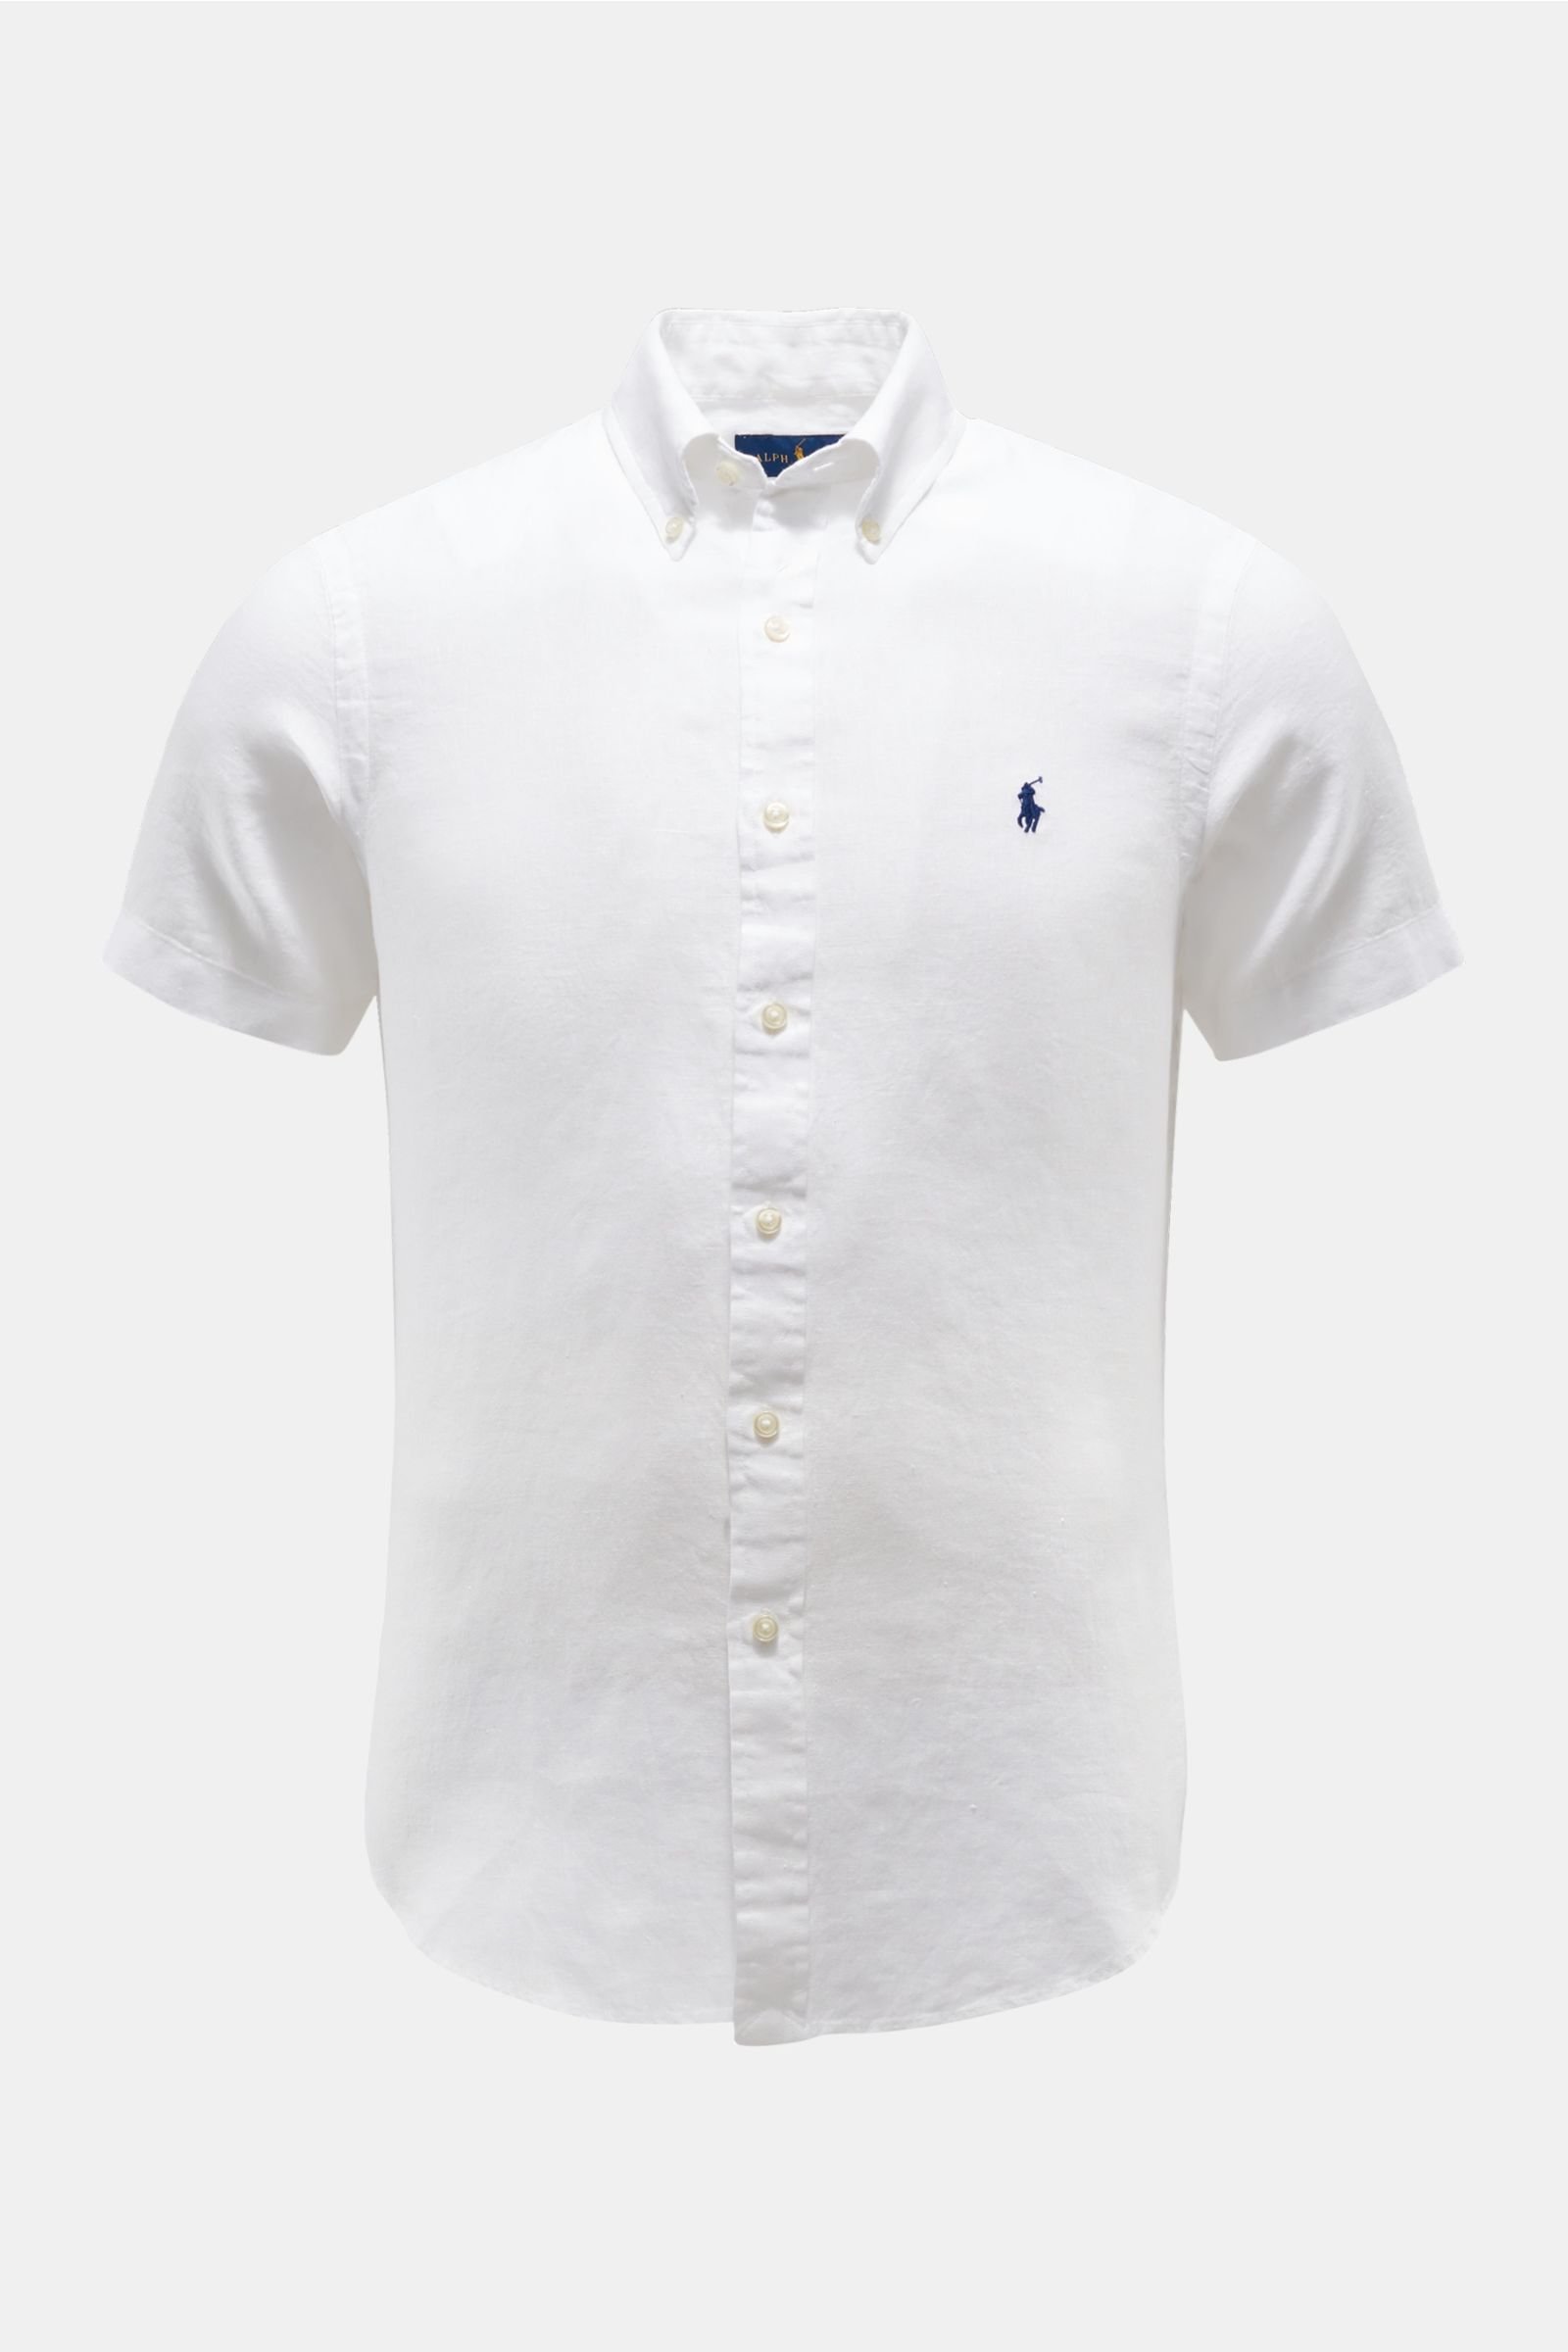 Leinen-Kurzarmhemd Button-Down-Kragen weiß